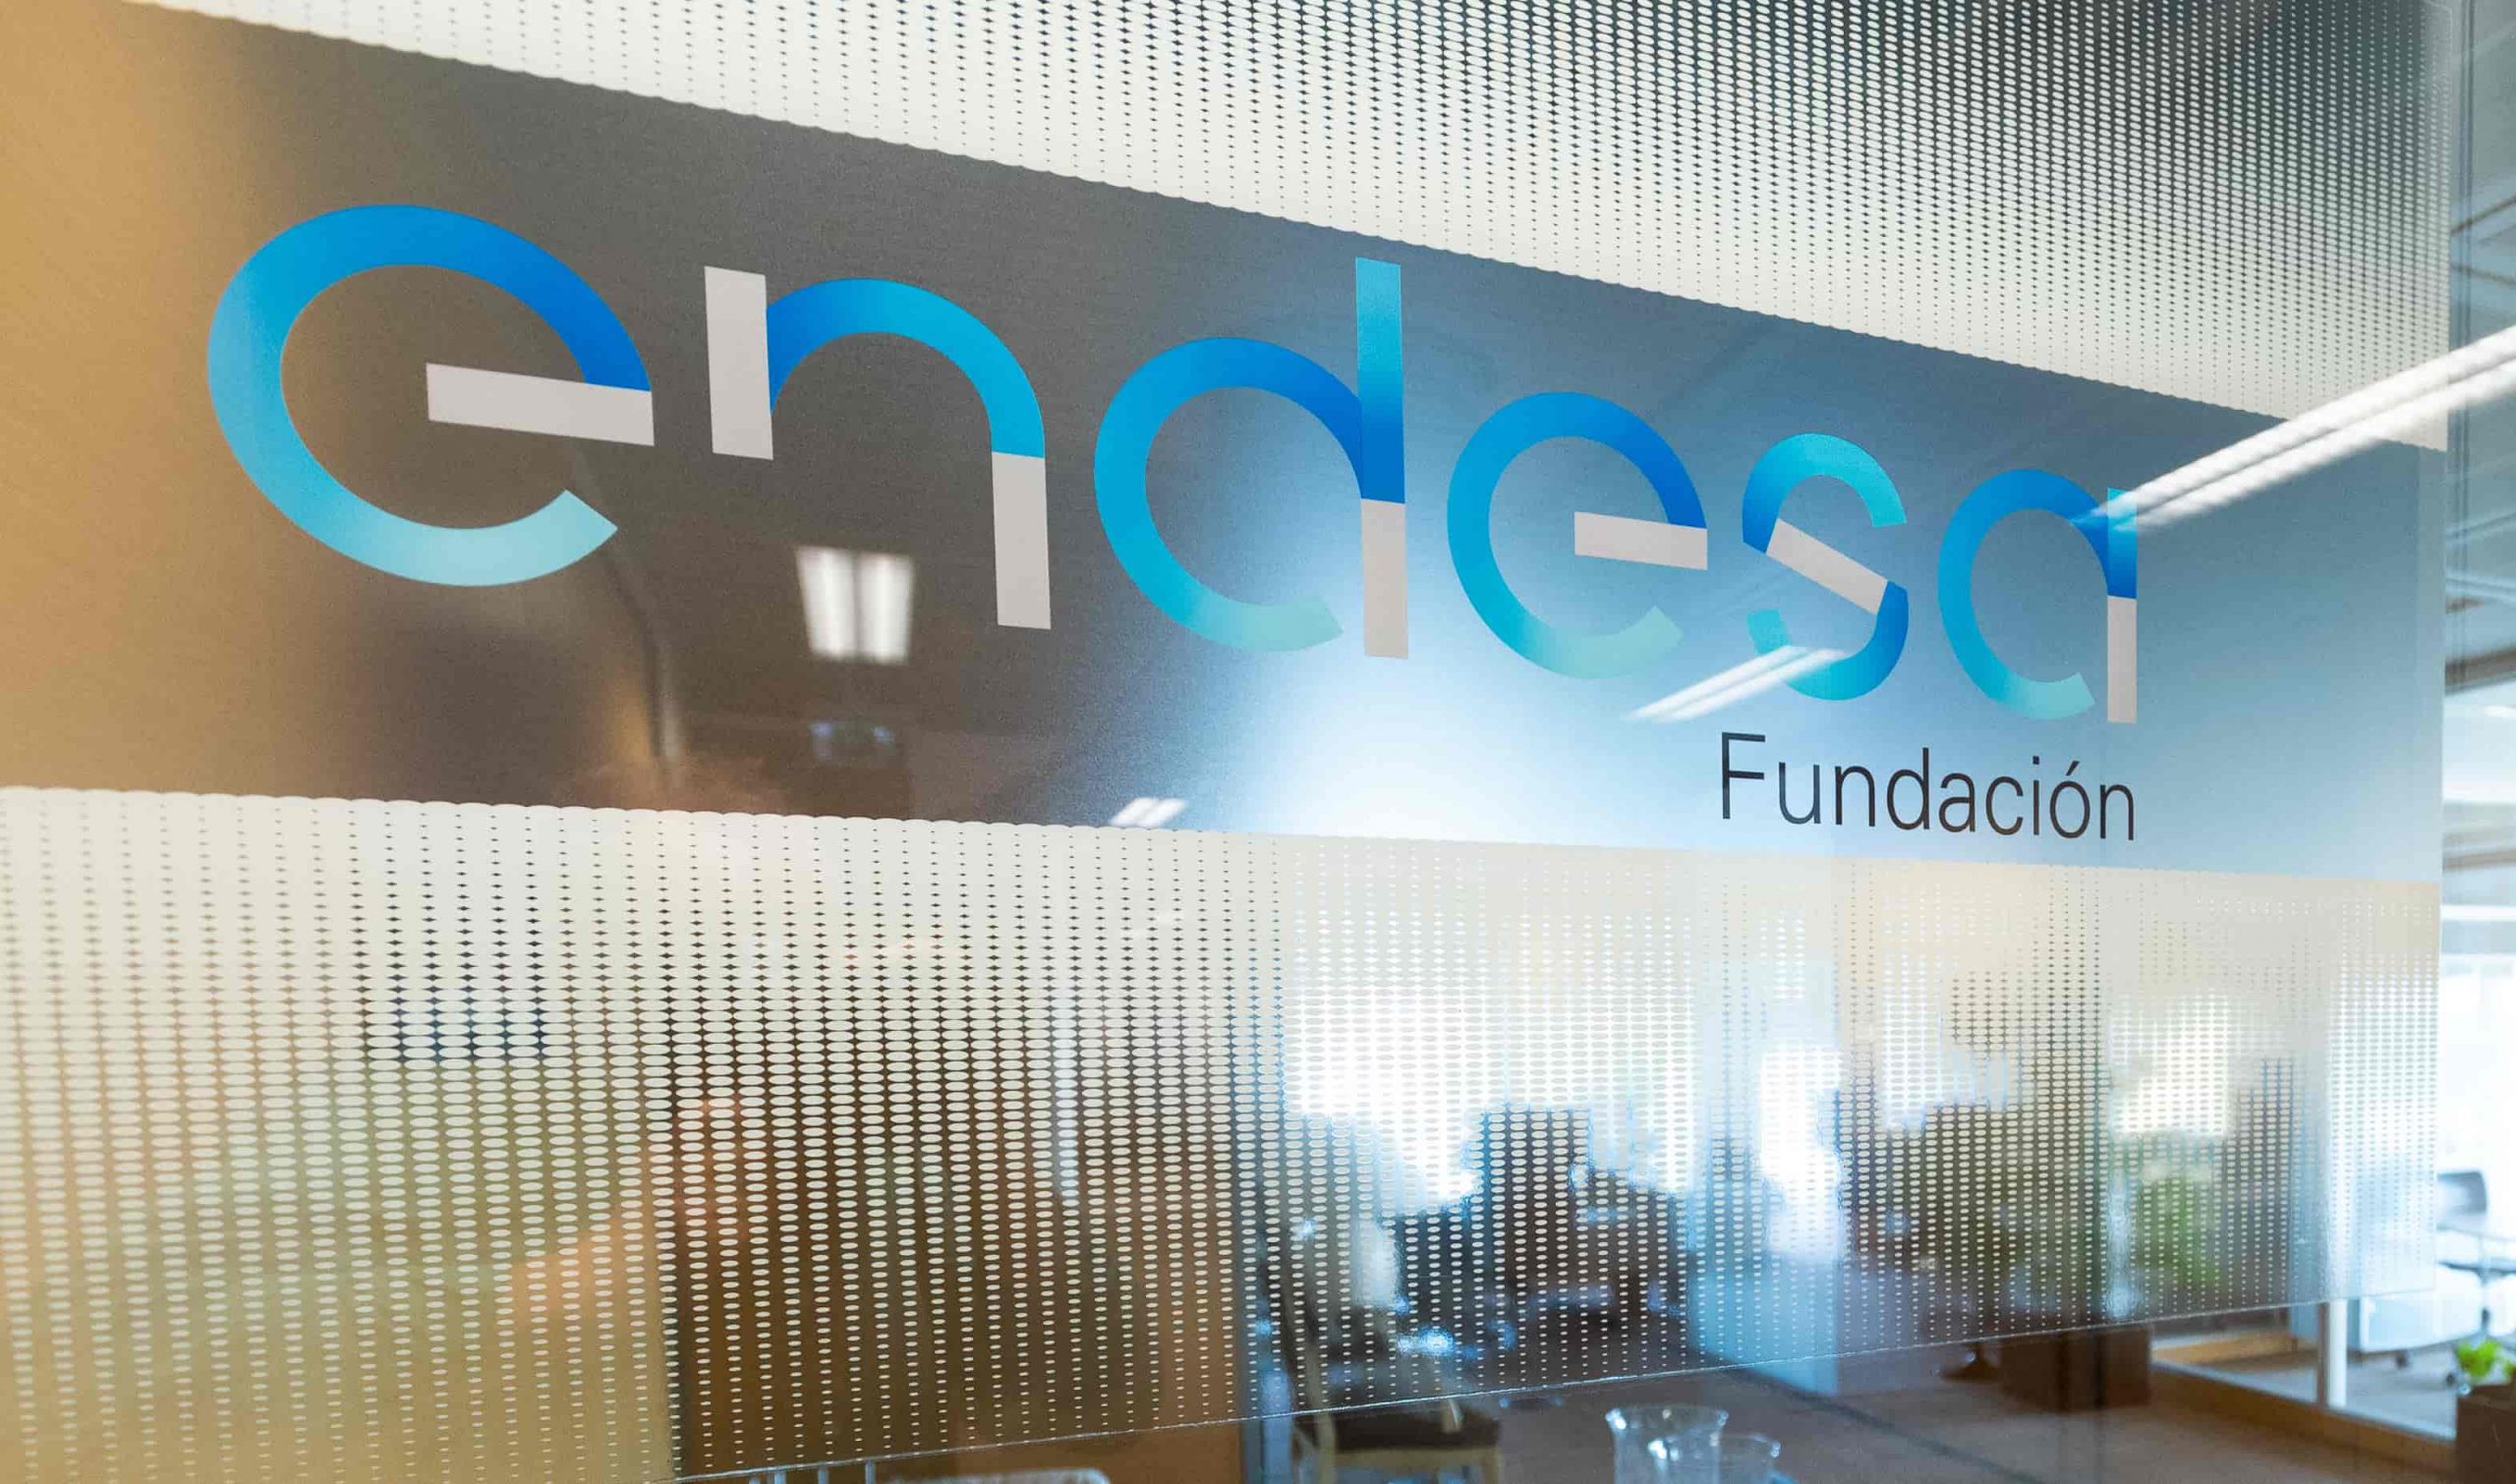 Fundación Endesa @Endesa